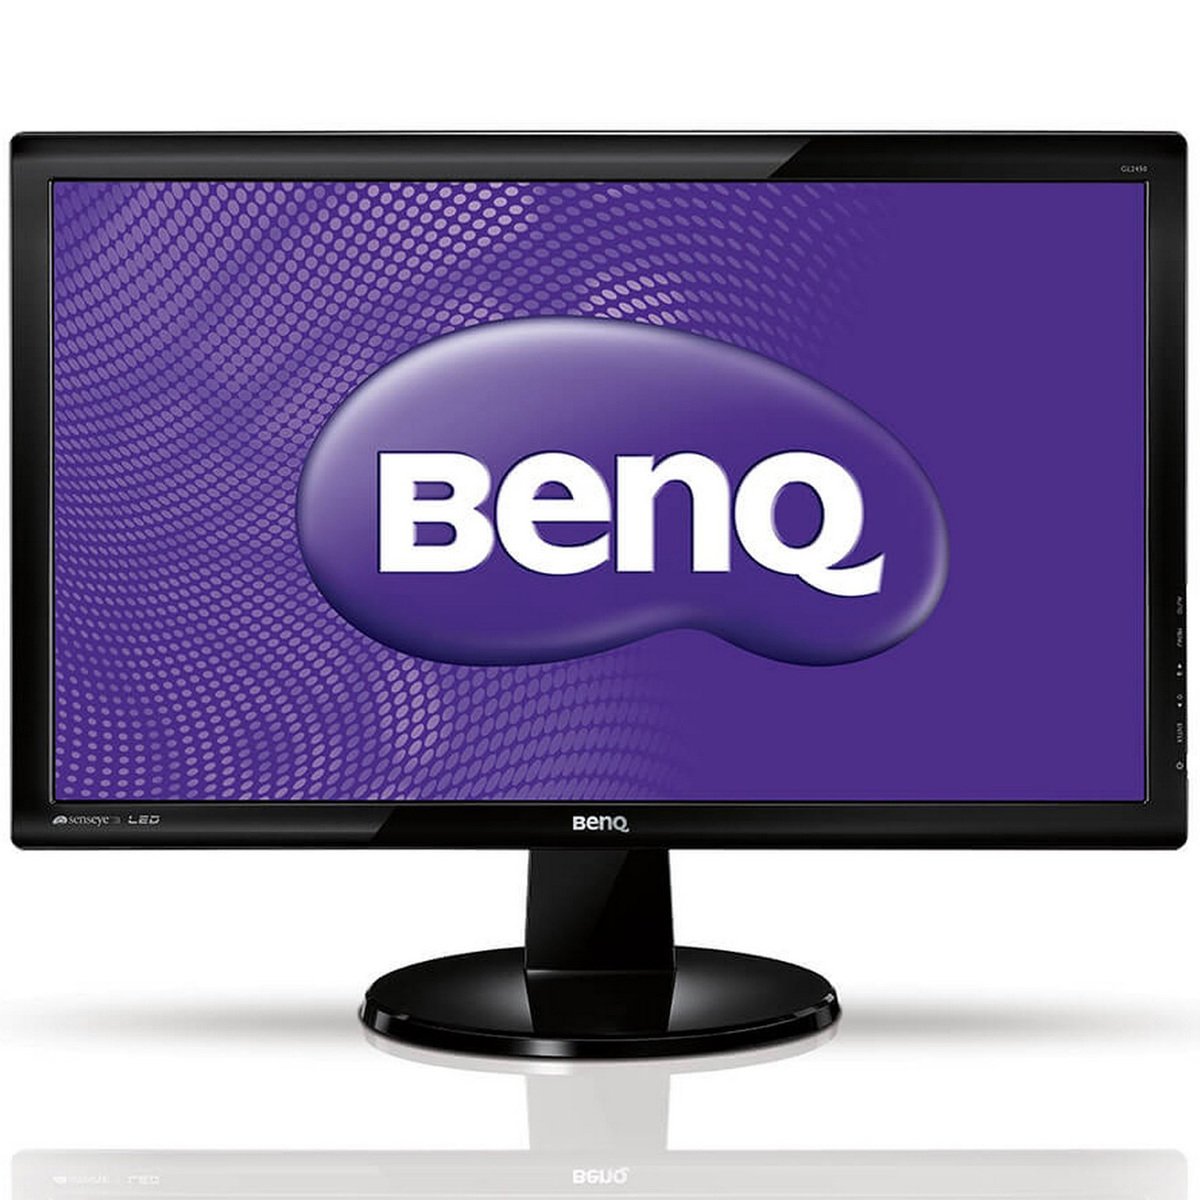 Benq Full HD LED Monitor GL2450 24inch